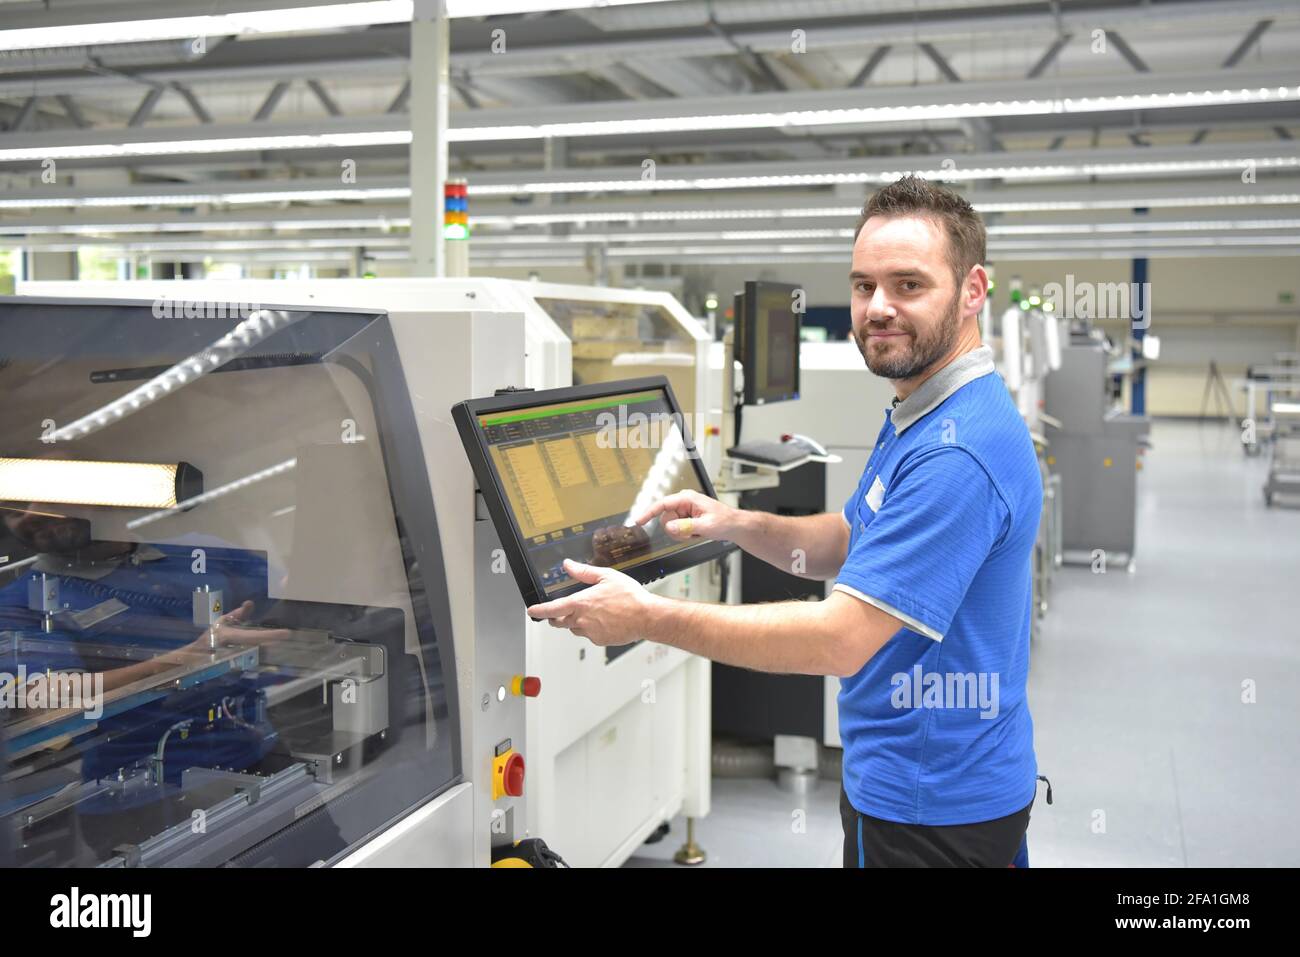 Produzione di componenti elettronici in un moderno stabilimento - Ingegnere sul posto di lavoro Foto Stock